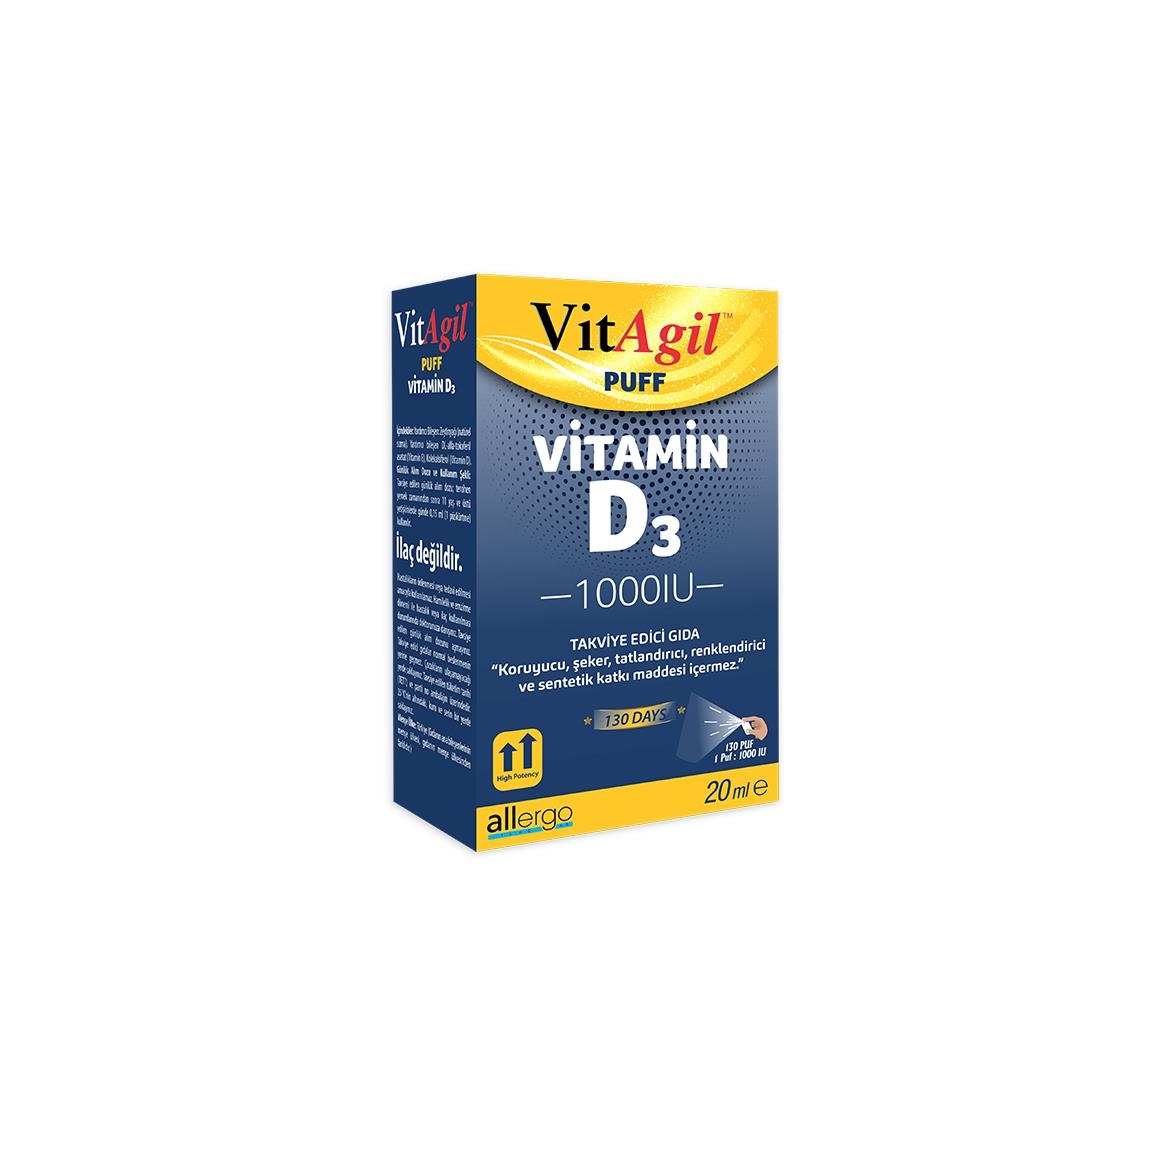 VitAgil Puff Vitamin D3 1000 IU 20 ml - 1